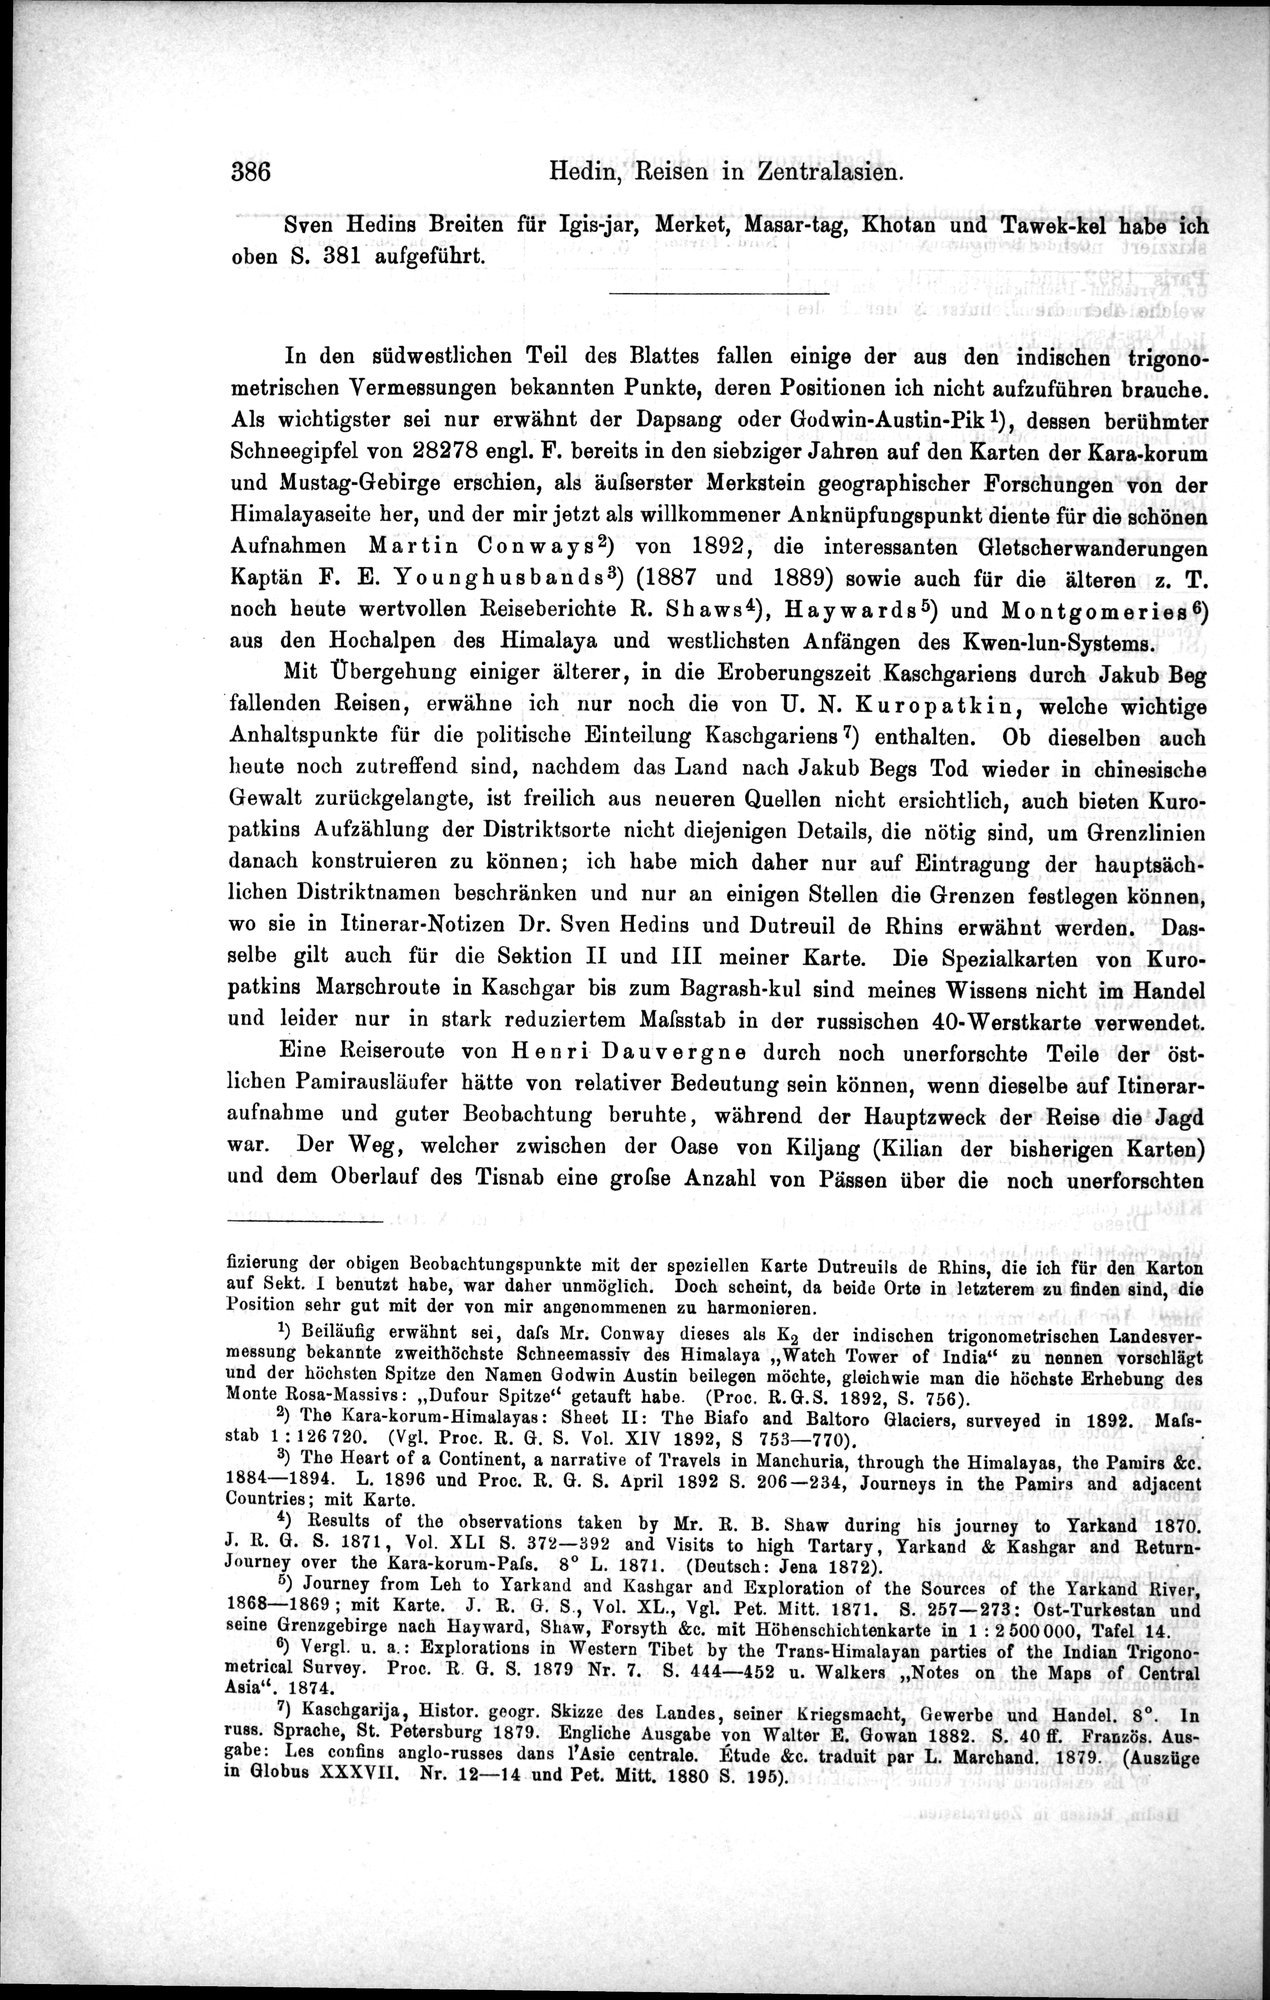 Die Geographische-Wissenschaftlichen Ergebnisse meiner Reisen in Zentralasien, 1894-1897 : vol.1 / Page 398 (Grayscale High Resolution Image)